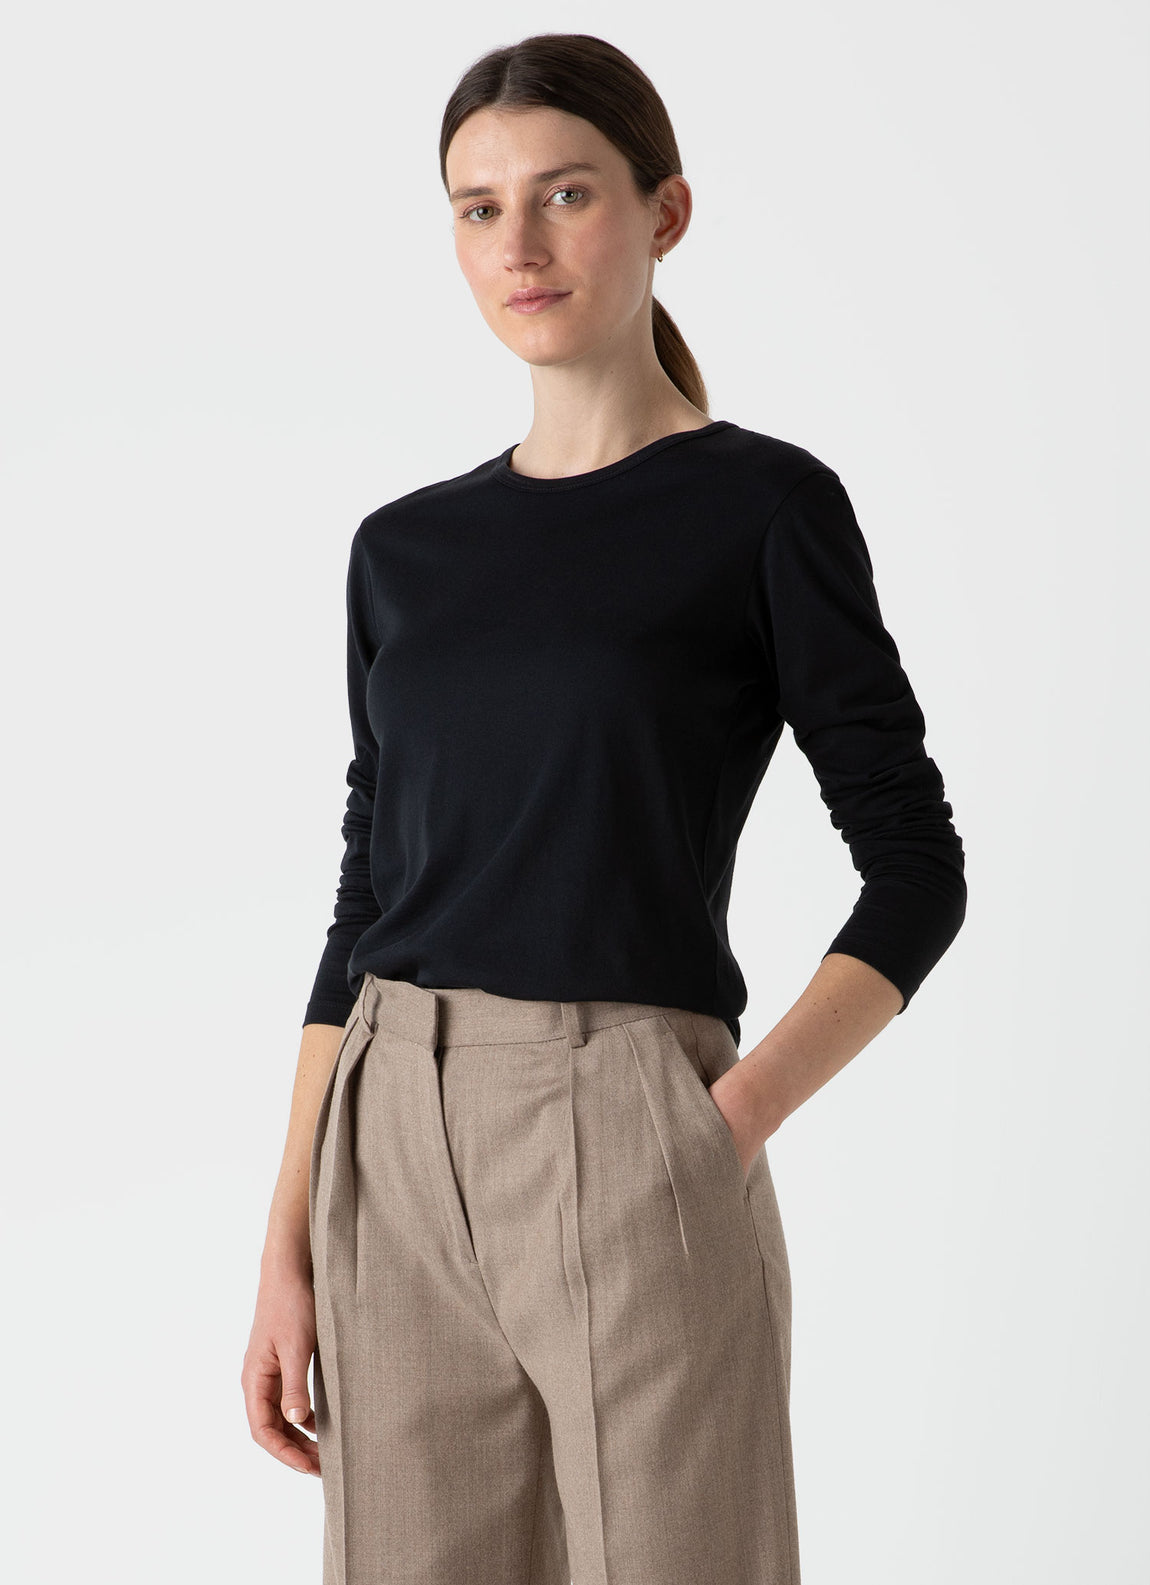 Women's Long Sleeve Classic T-shirt in Black | Sunspel